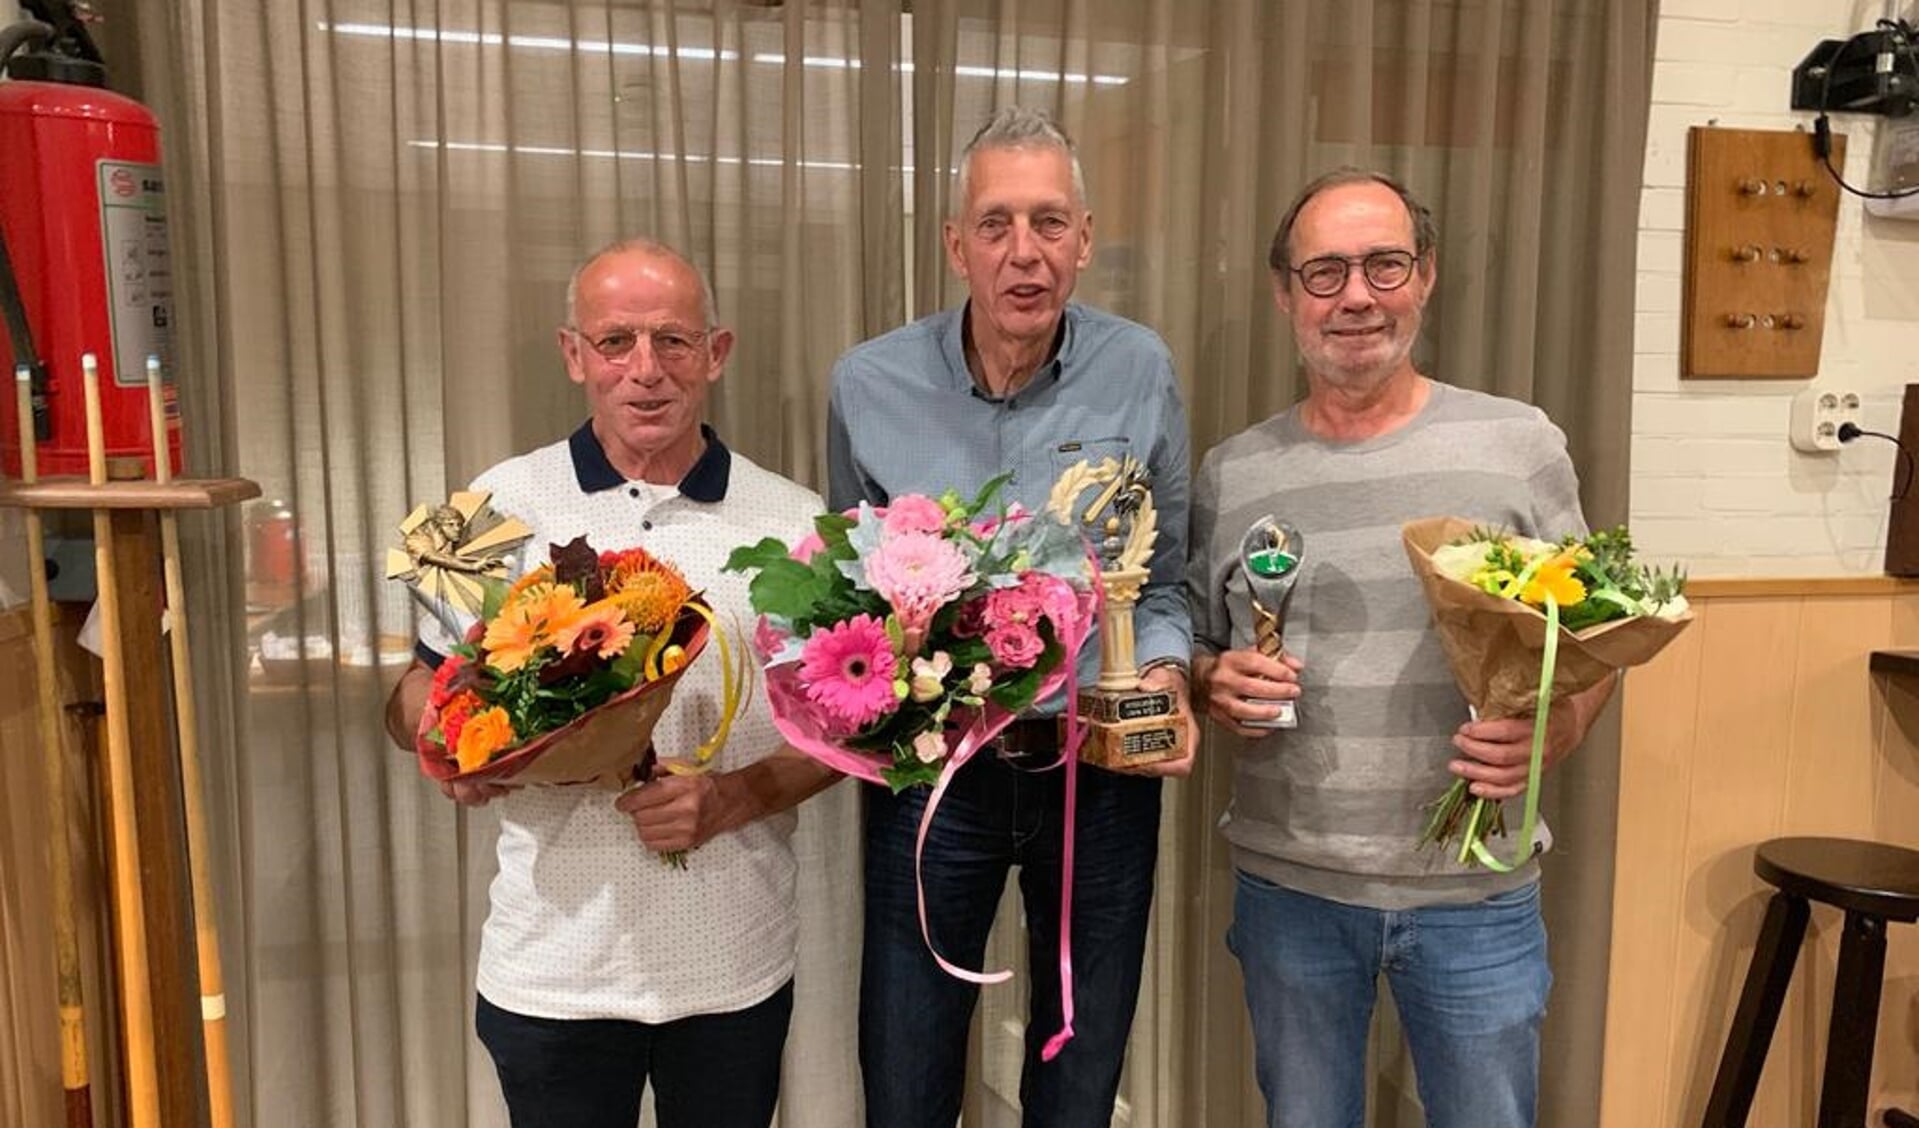 De winnaars Toon Schalk, Jan de Craen en Peter Coremans.